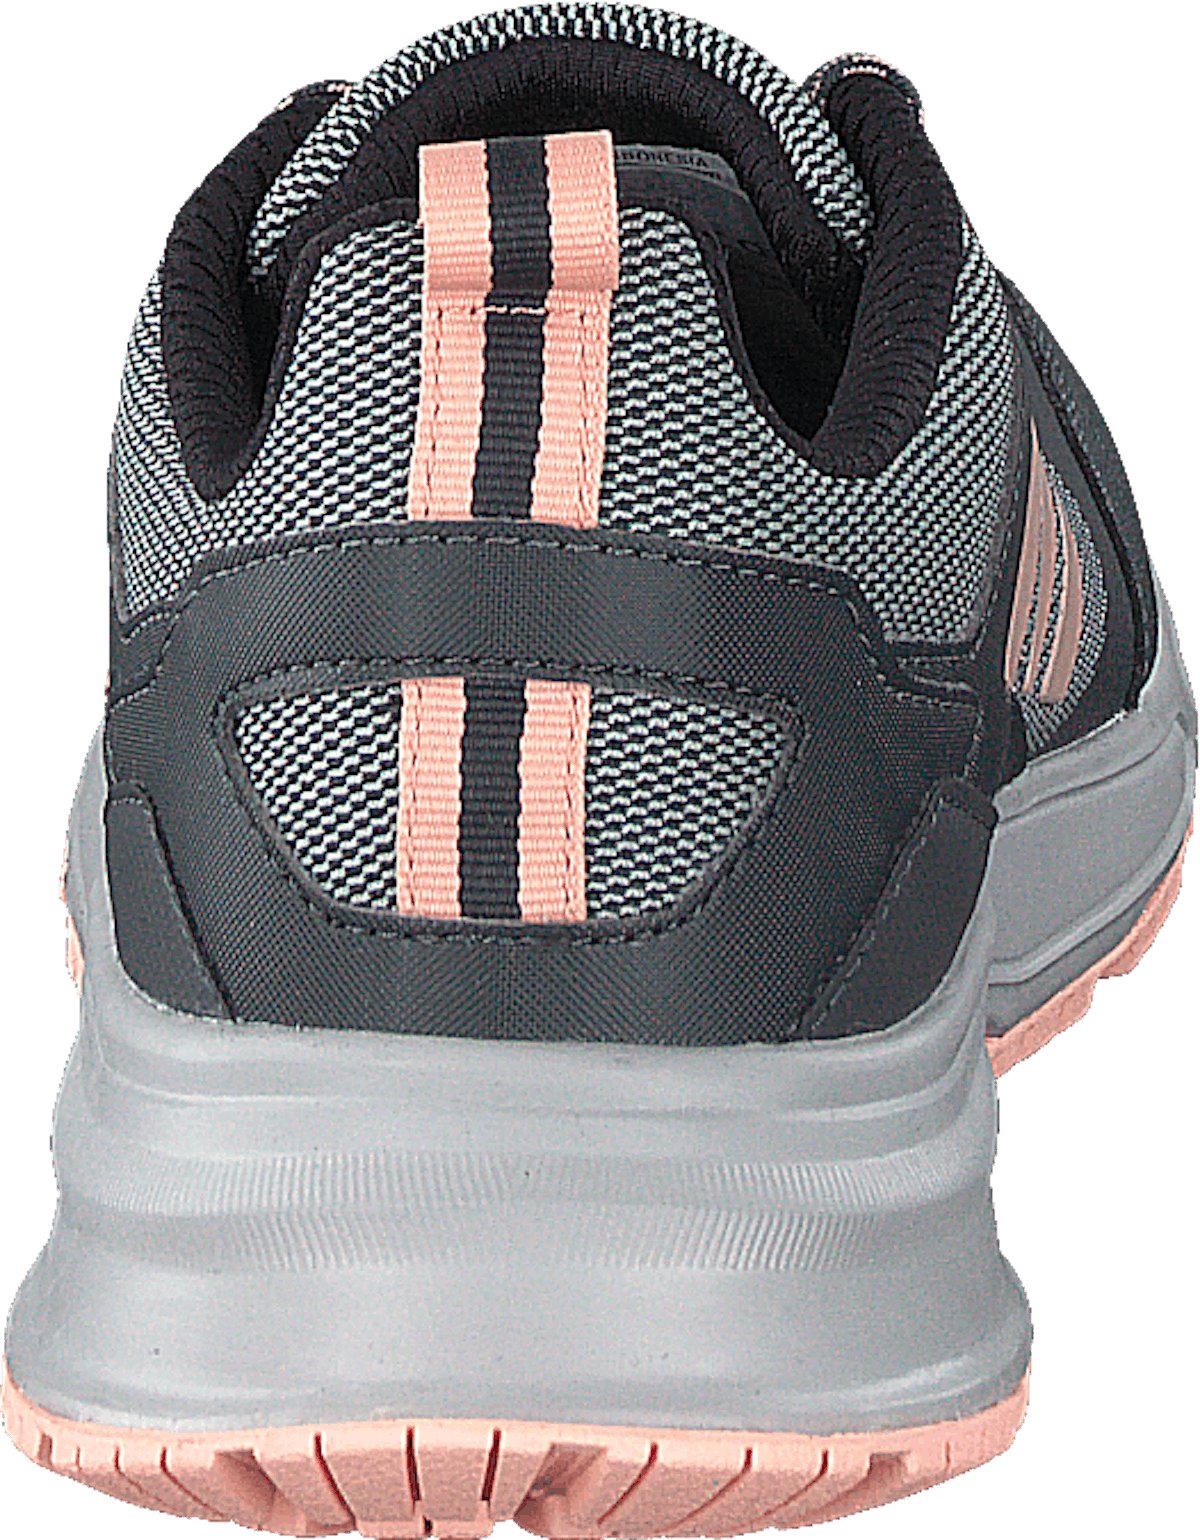 Rockadia Trail 3 Shoes Grey Six / Glow Pink / Grey Two